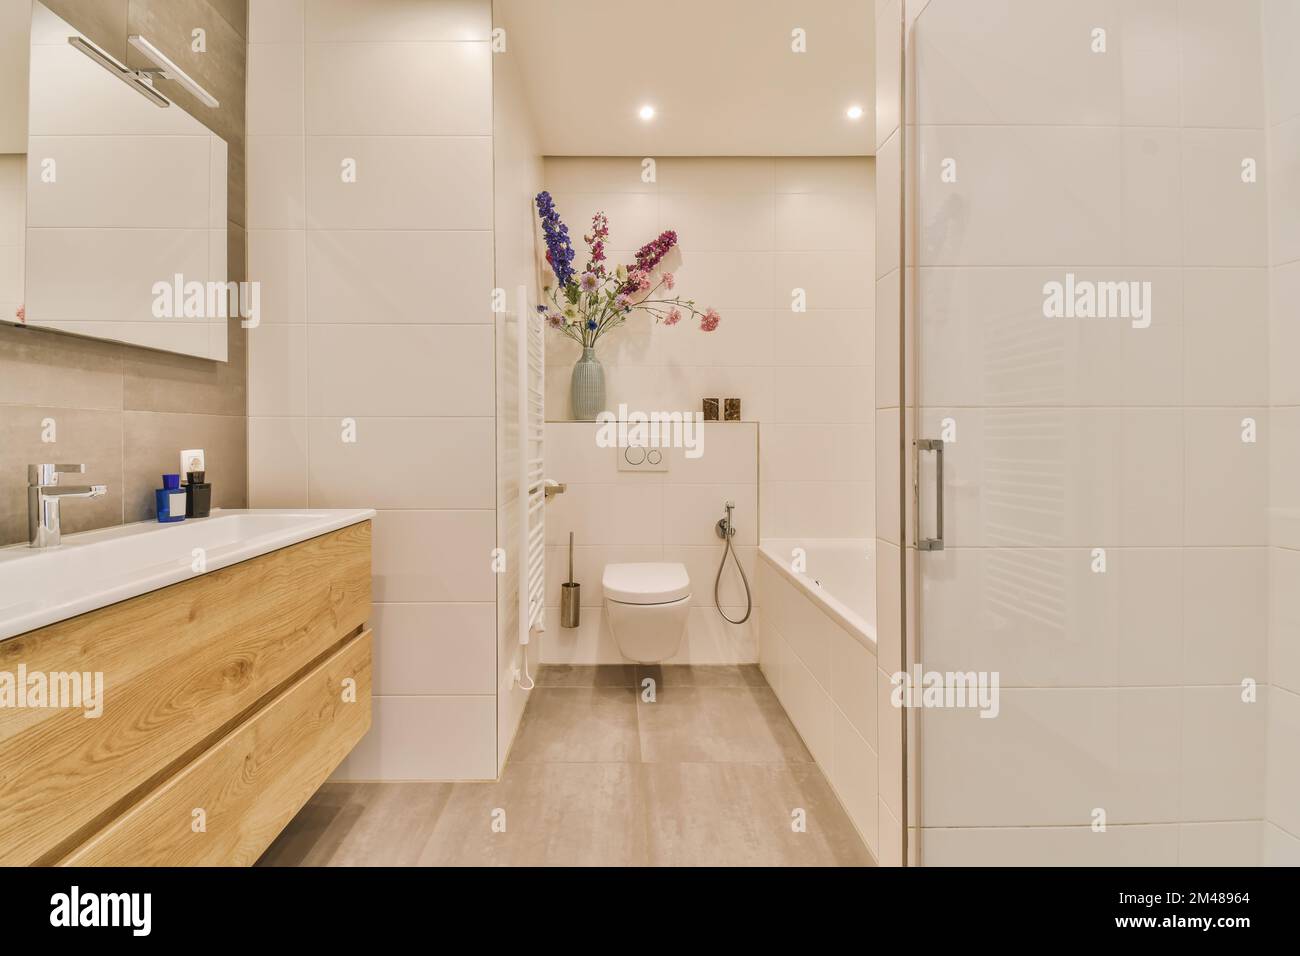 une salle de bains moderne avec parquet et murs blancs, ainsi qu''une coiffeuse en bois dans la cabine de douche se trouve à côté des toilettes Banque D'Images